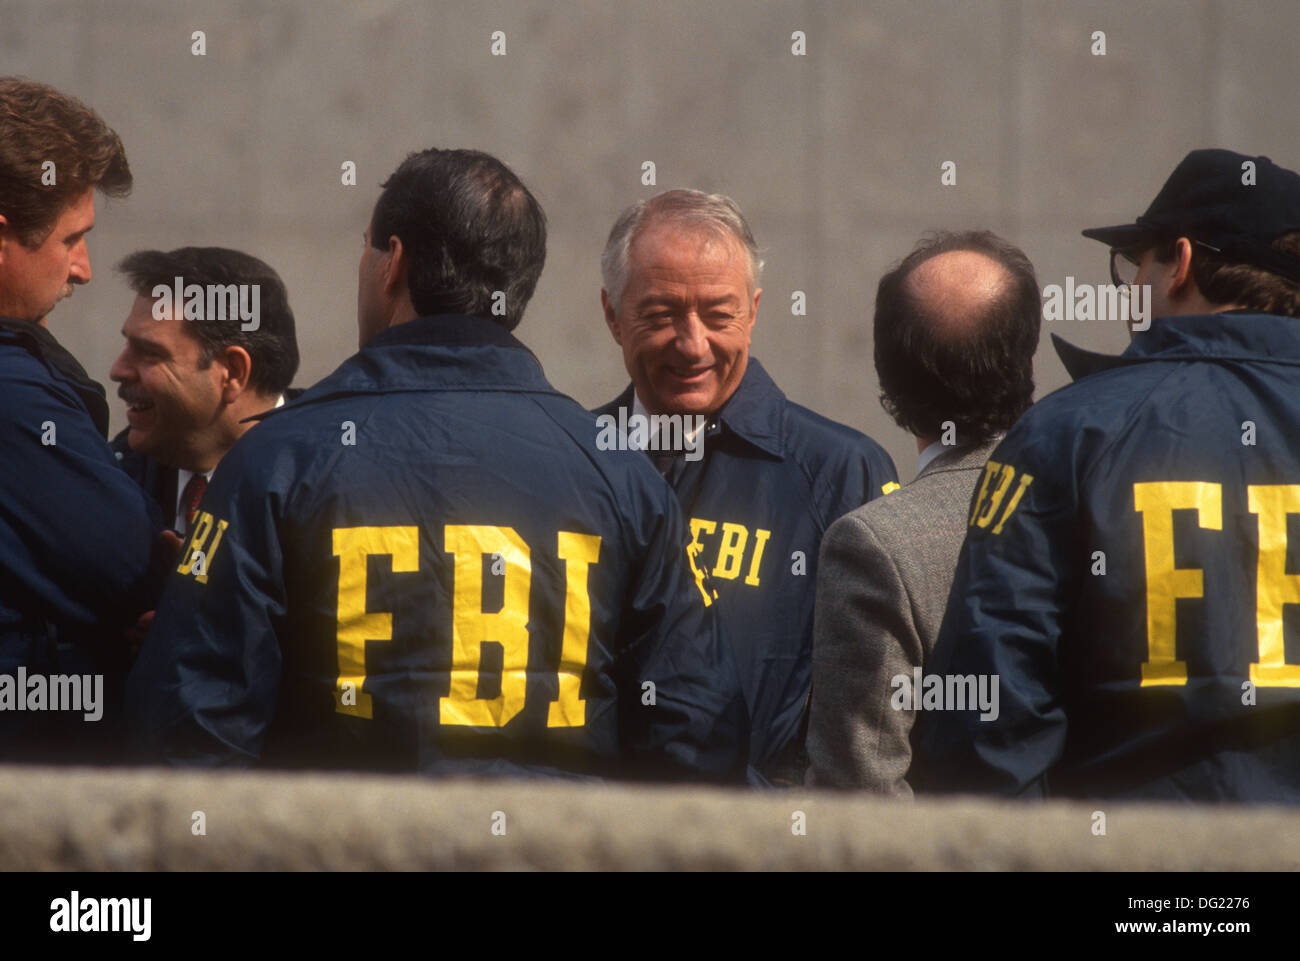 New York, NY - 3 avril 1993 Directeur régional de New York du FBI James Fox (1938-1997) sur le site de l'attentat contre le World Trade Center 1993 Banque D'Images